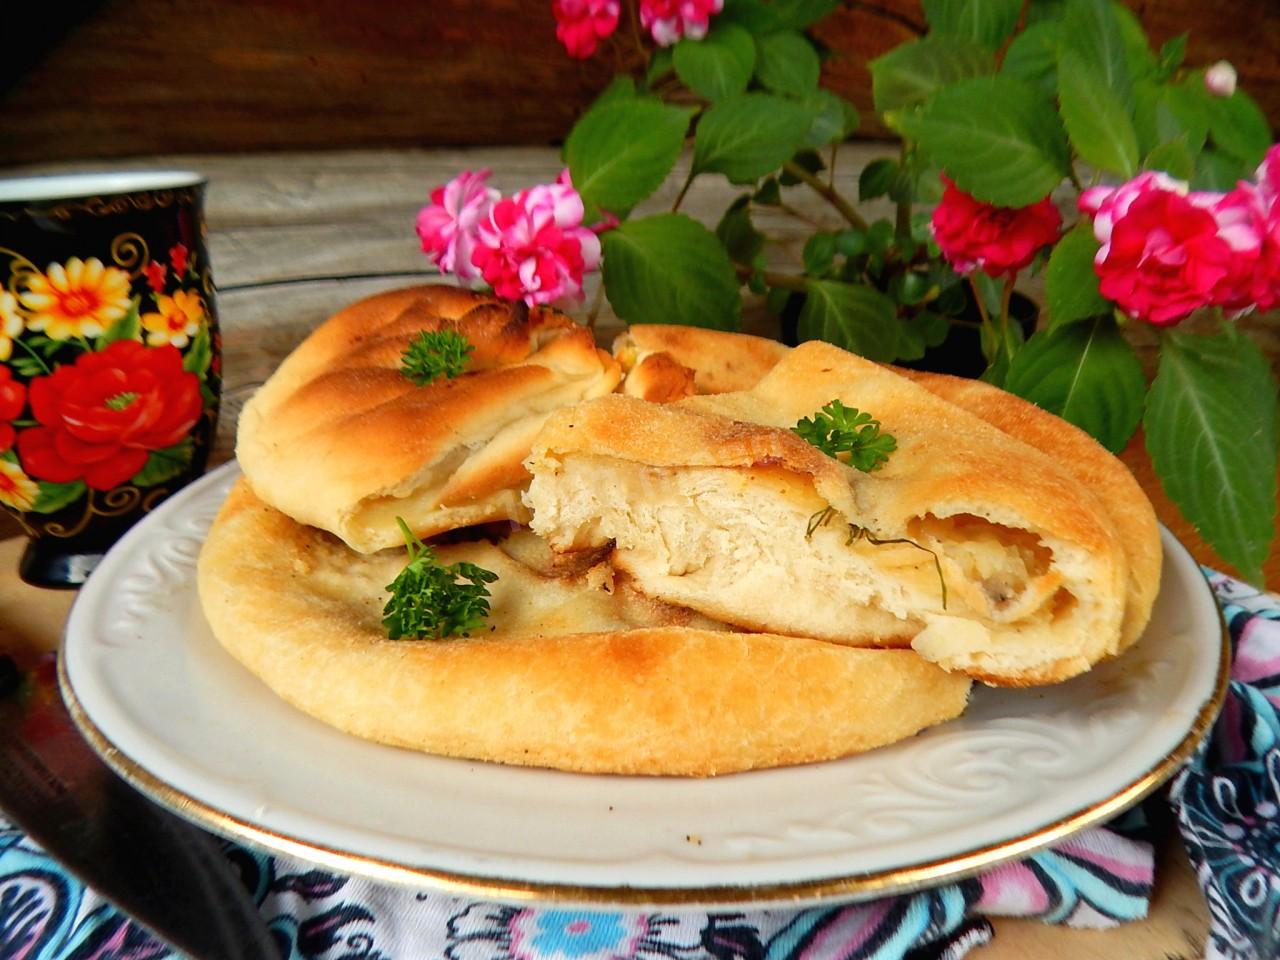 Пирог осетинский с мясом и картошкой в духовке пошаговый рецепт с фото